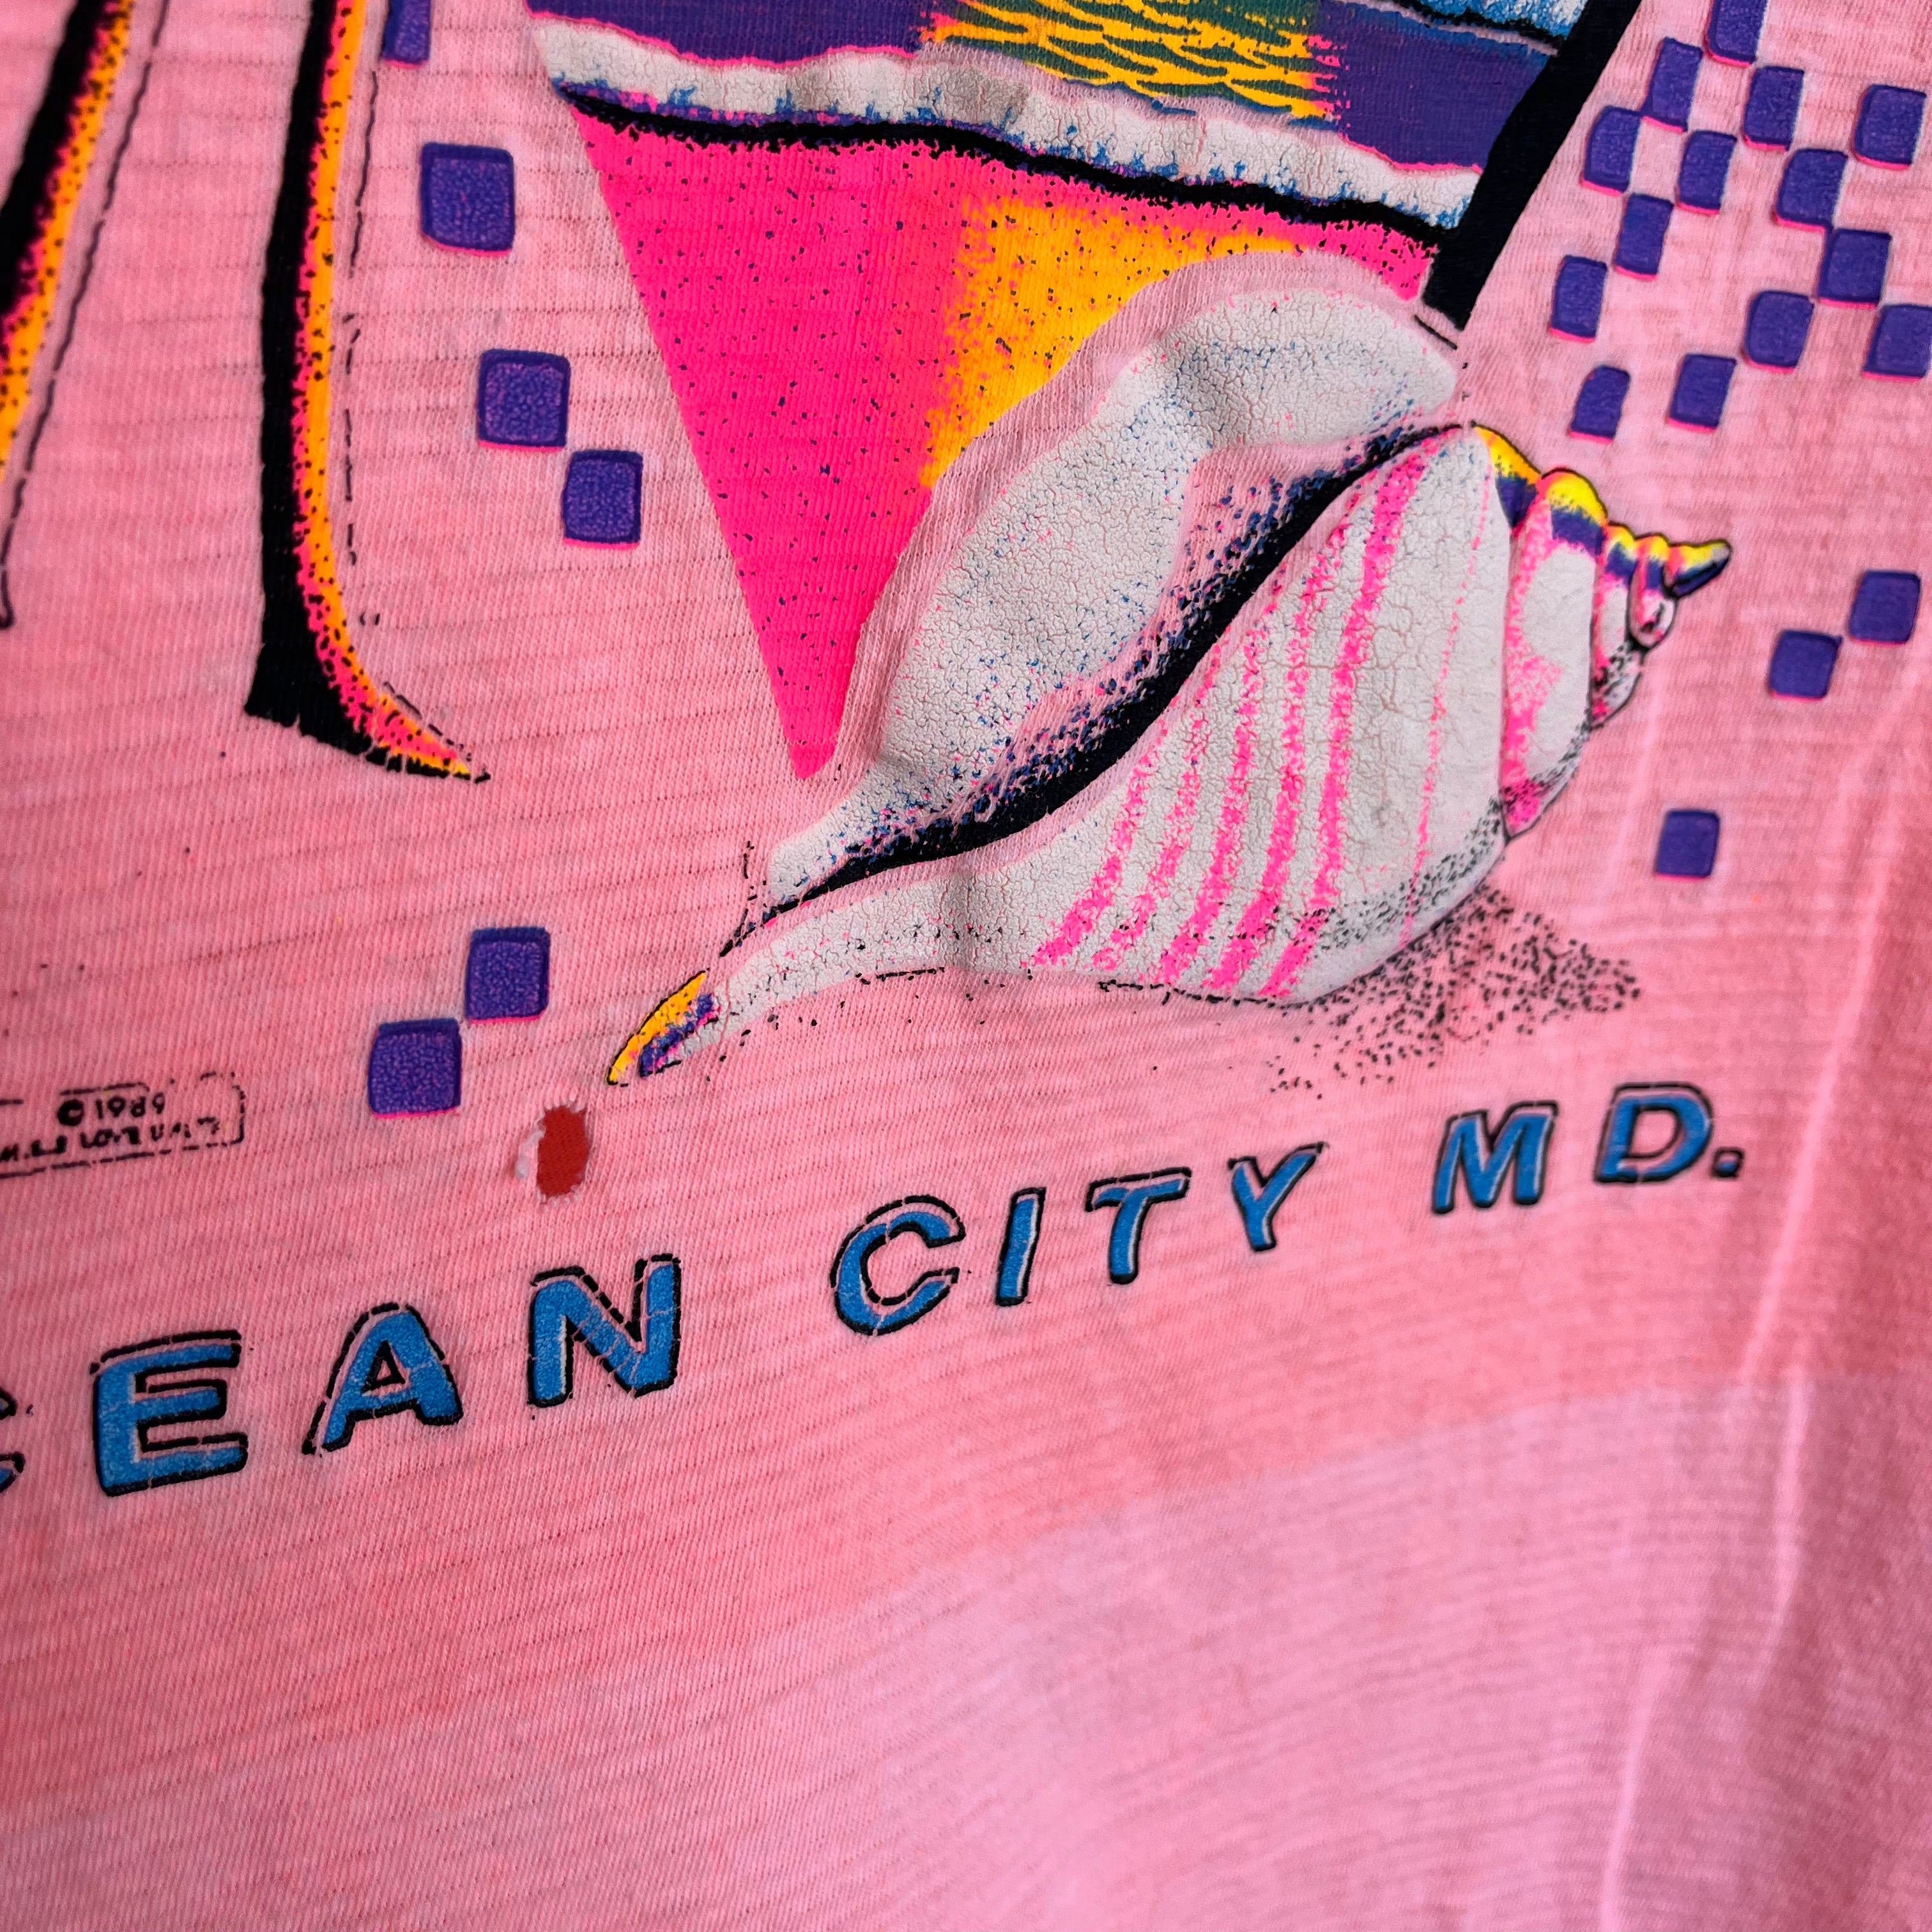 1989 Ocean City, MD Beat Up Tourist T-Shirt